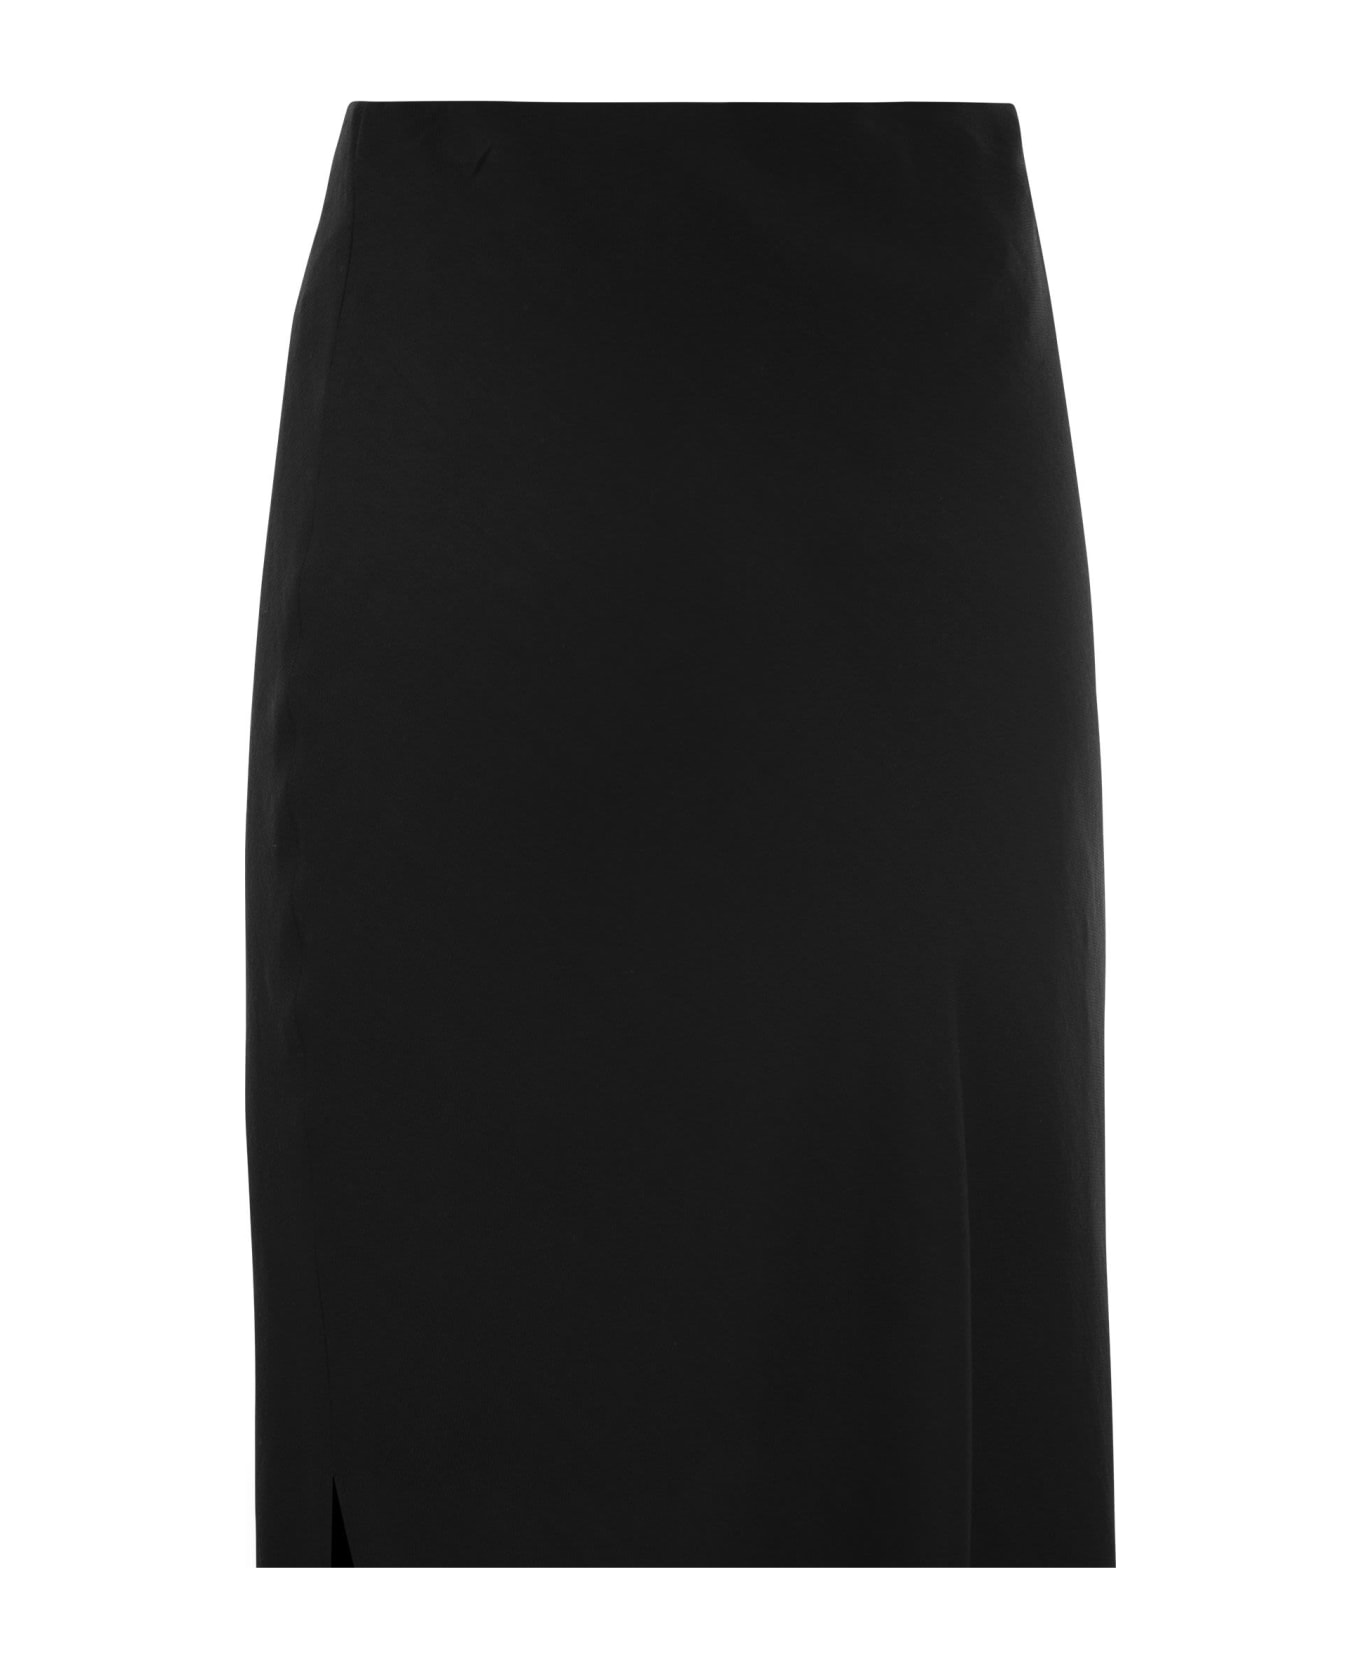 Brunello Cucinelli Viscose And Linen Long Pencil Skirt - Black スカート